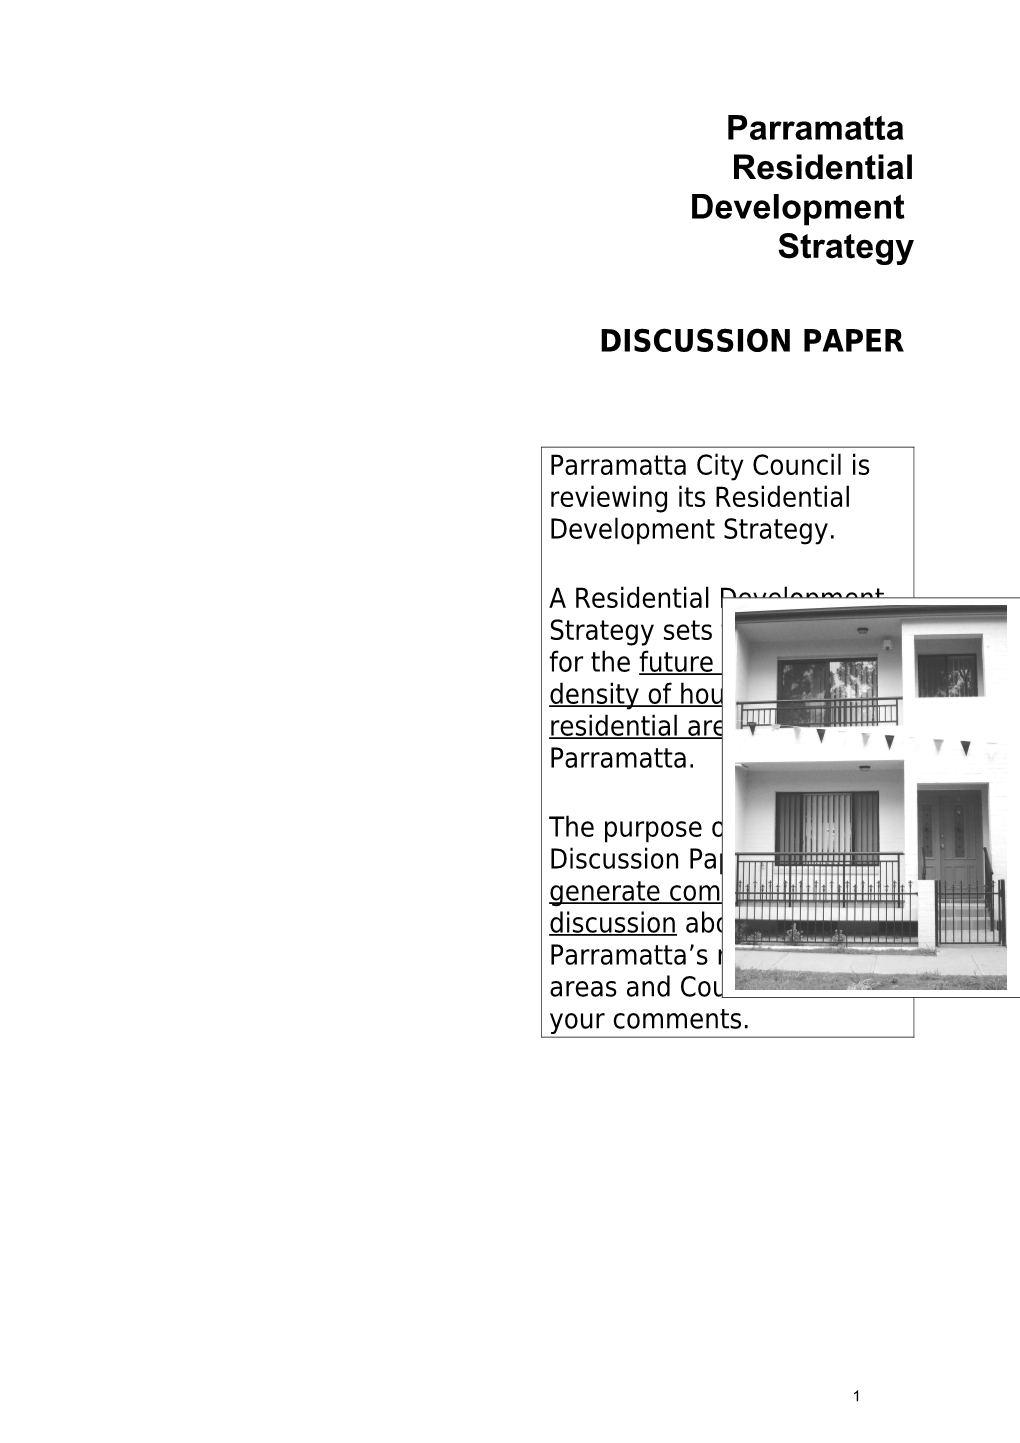 Parramatta Residential Development Strategy